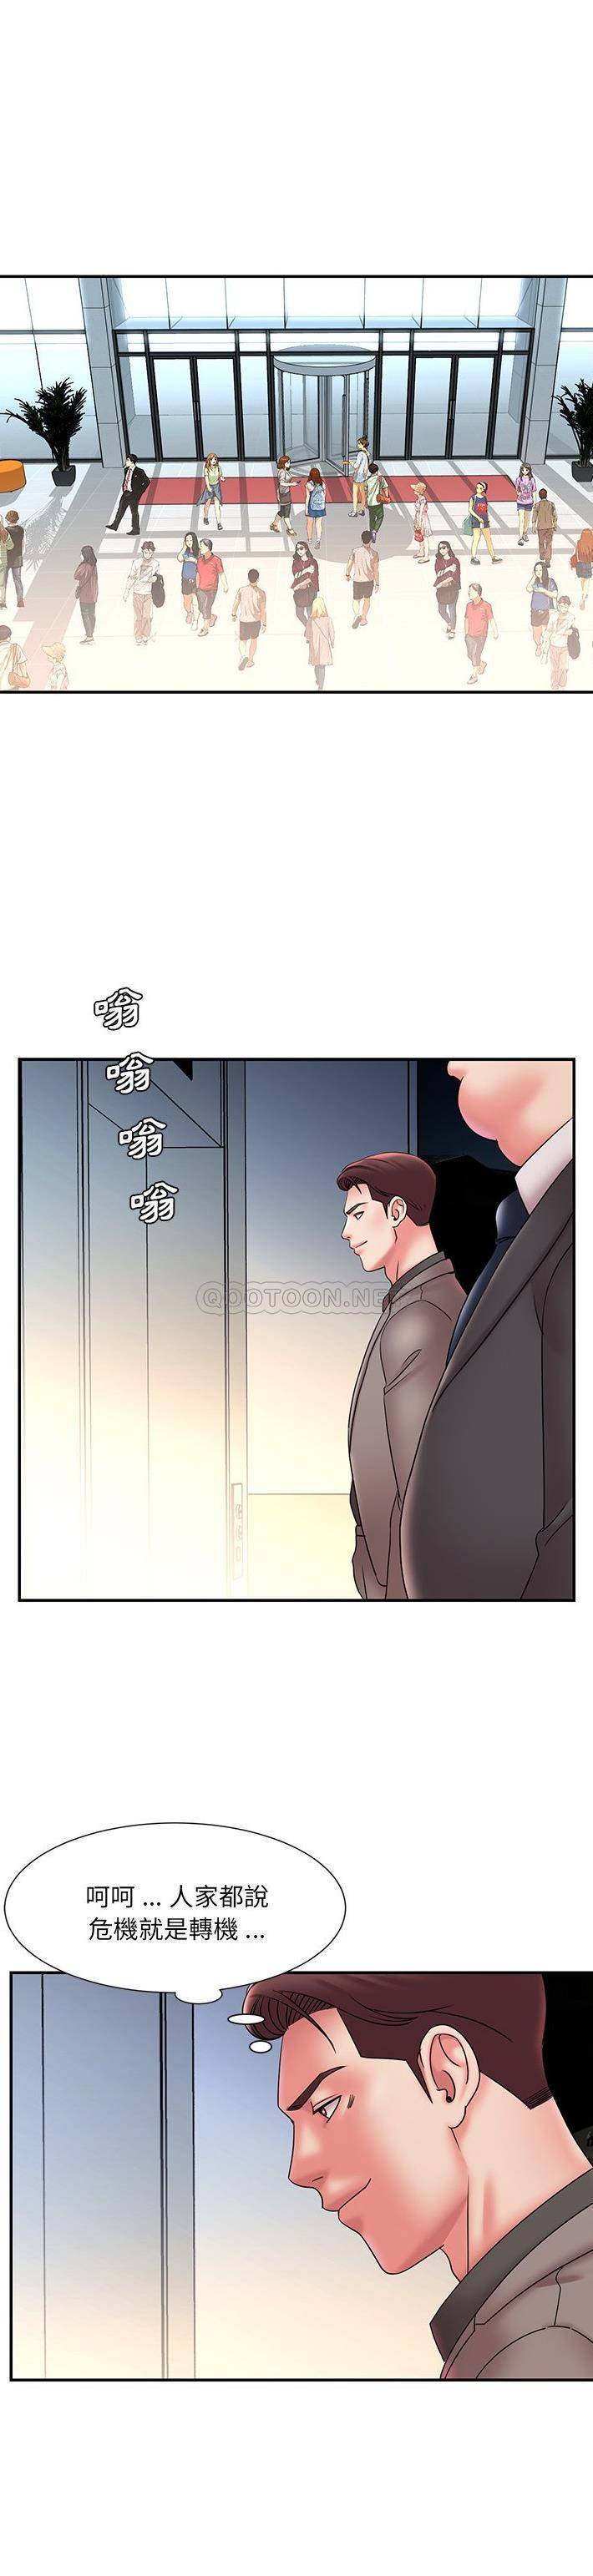 韩国污漫画 被拋棄的男人(男孩沒人愛) 第20话 12